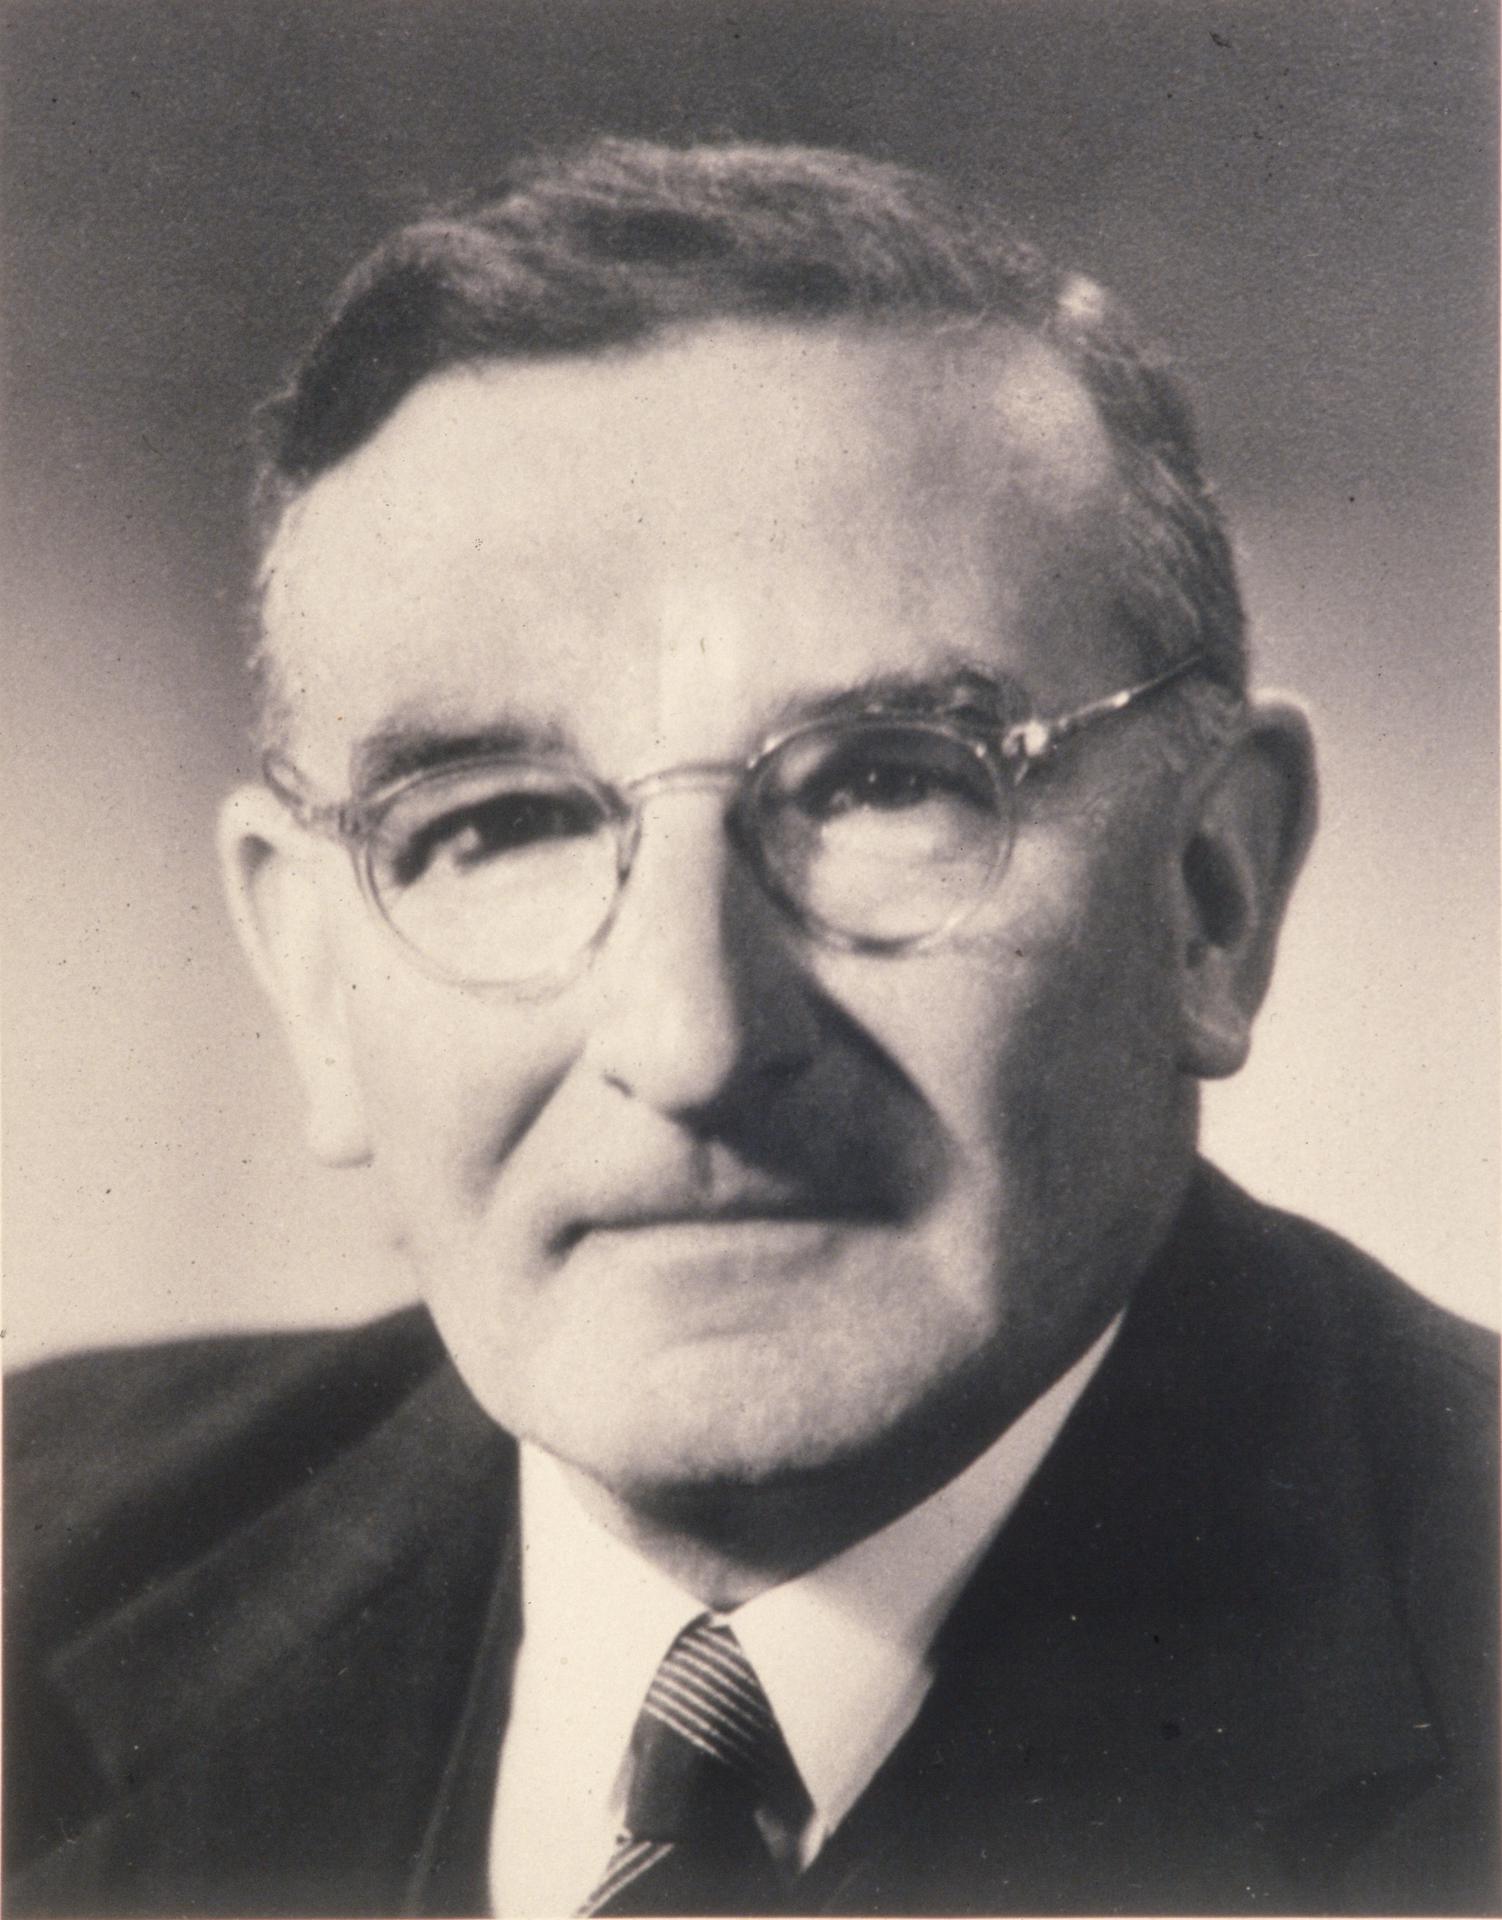 Professor J. Neill Greenwood